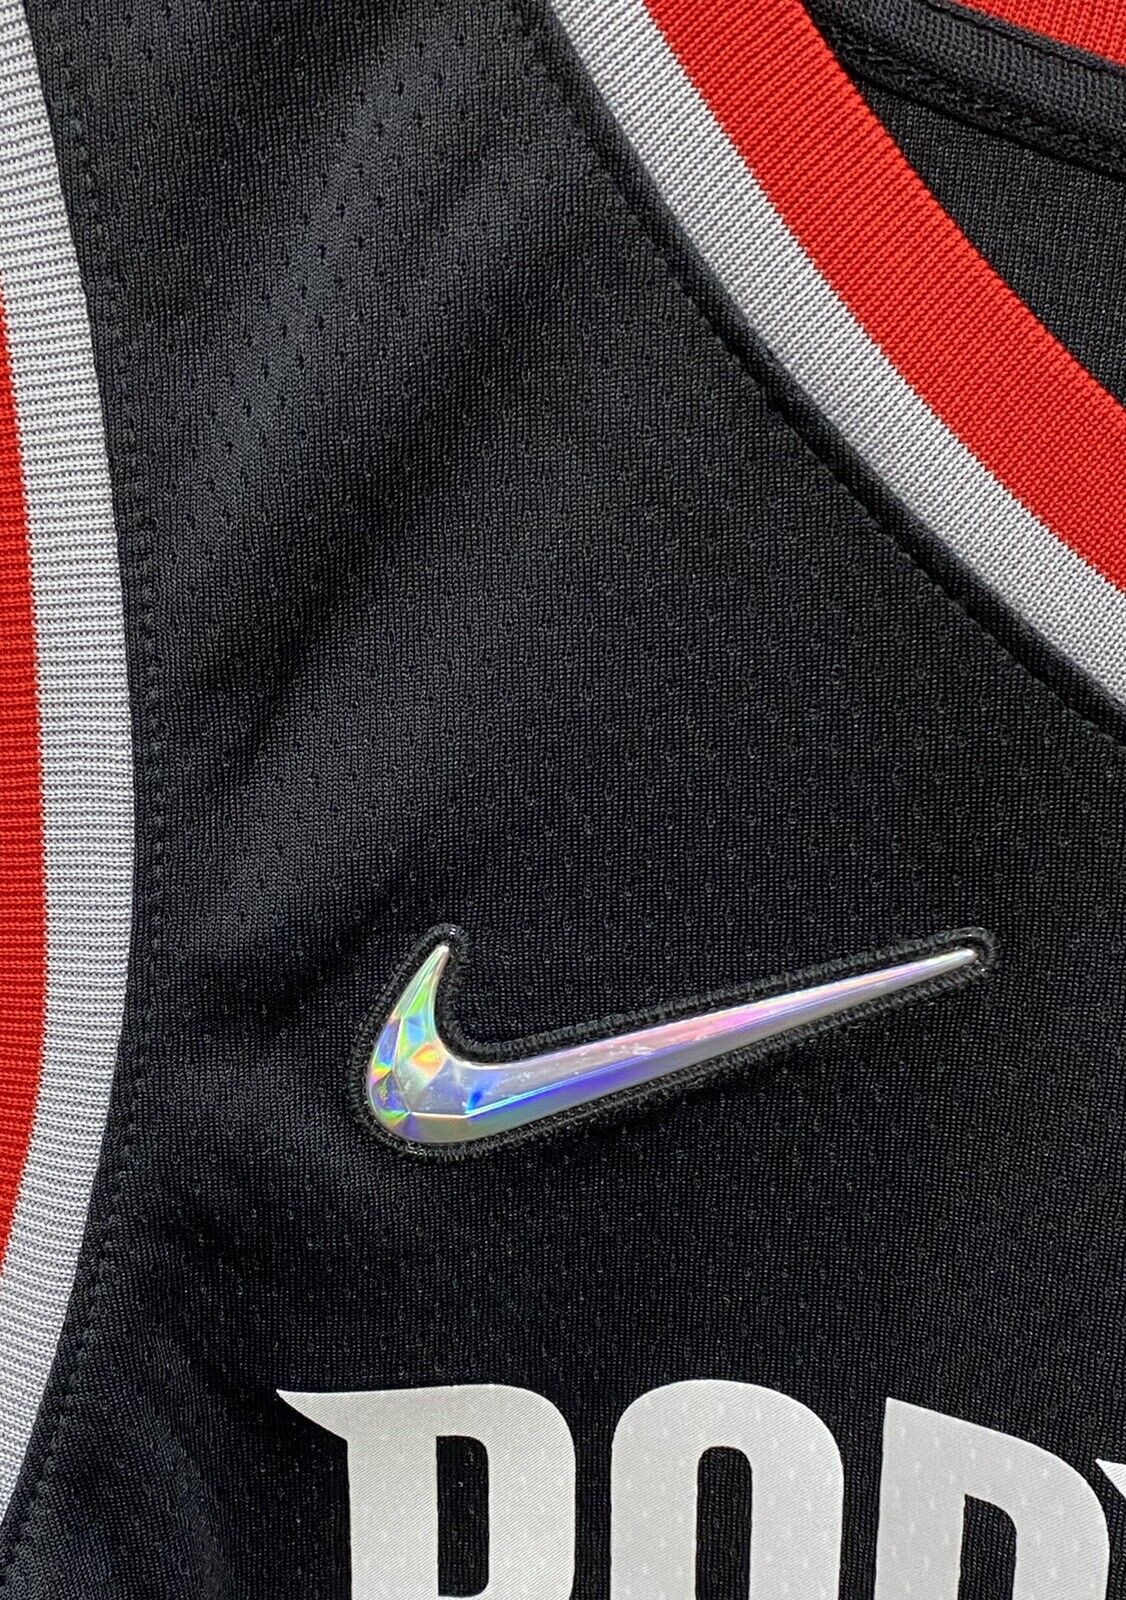 Trail Blazers Damian Lillard Nike Authentic Icon Jersey